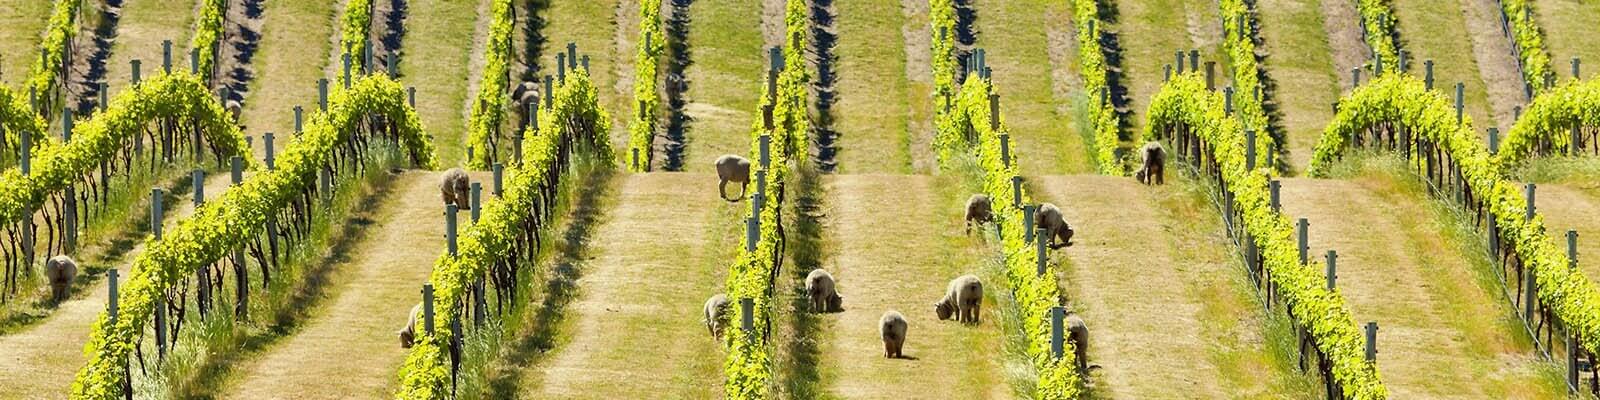 Découvrez notre collection de vins de Nouvelle-Zélande